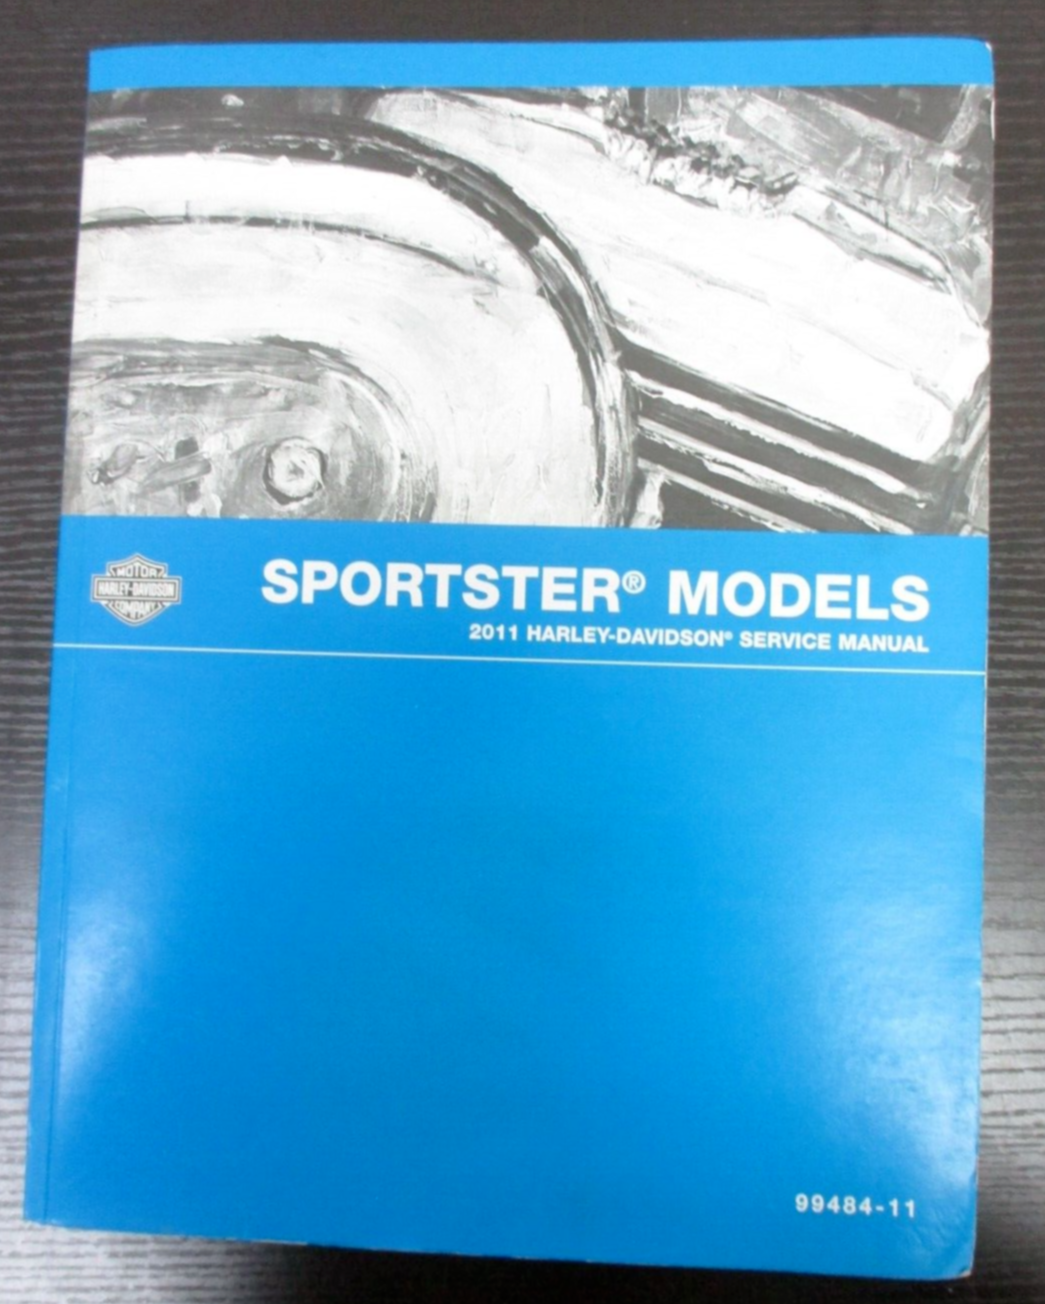 Harley-Davidson  Sportster Models 2011 Service Manual 99484-11